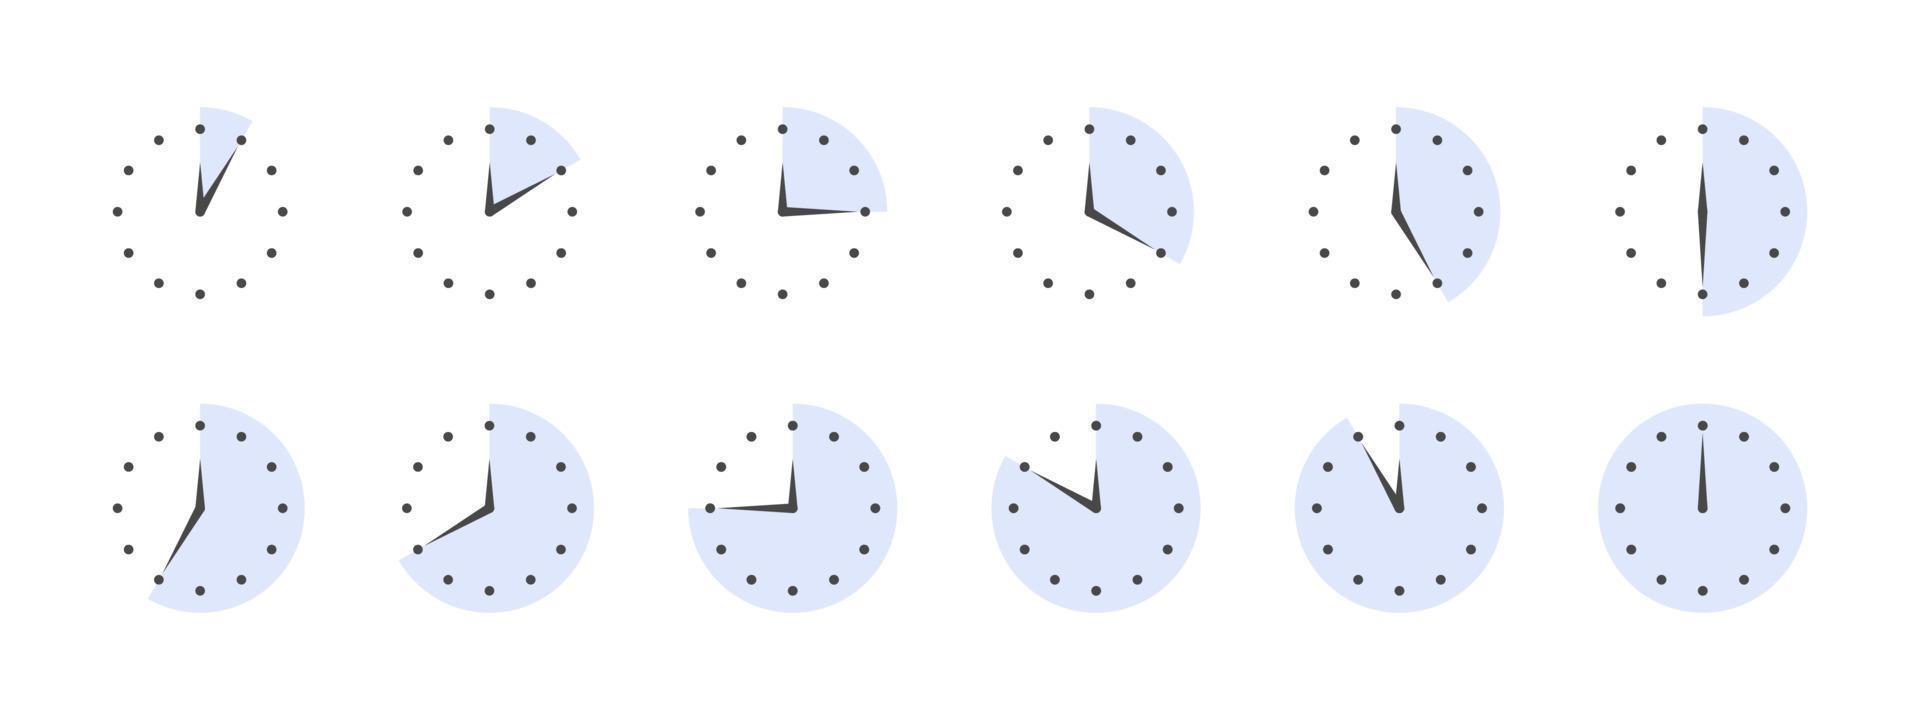 stopwatches tekens. Koken tijd pictogrammen voor voedsel. pictogrammen van tijd in minuten. vector illustratie